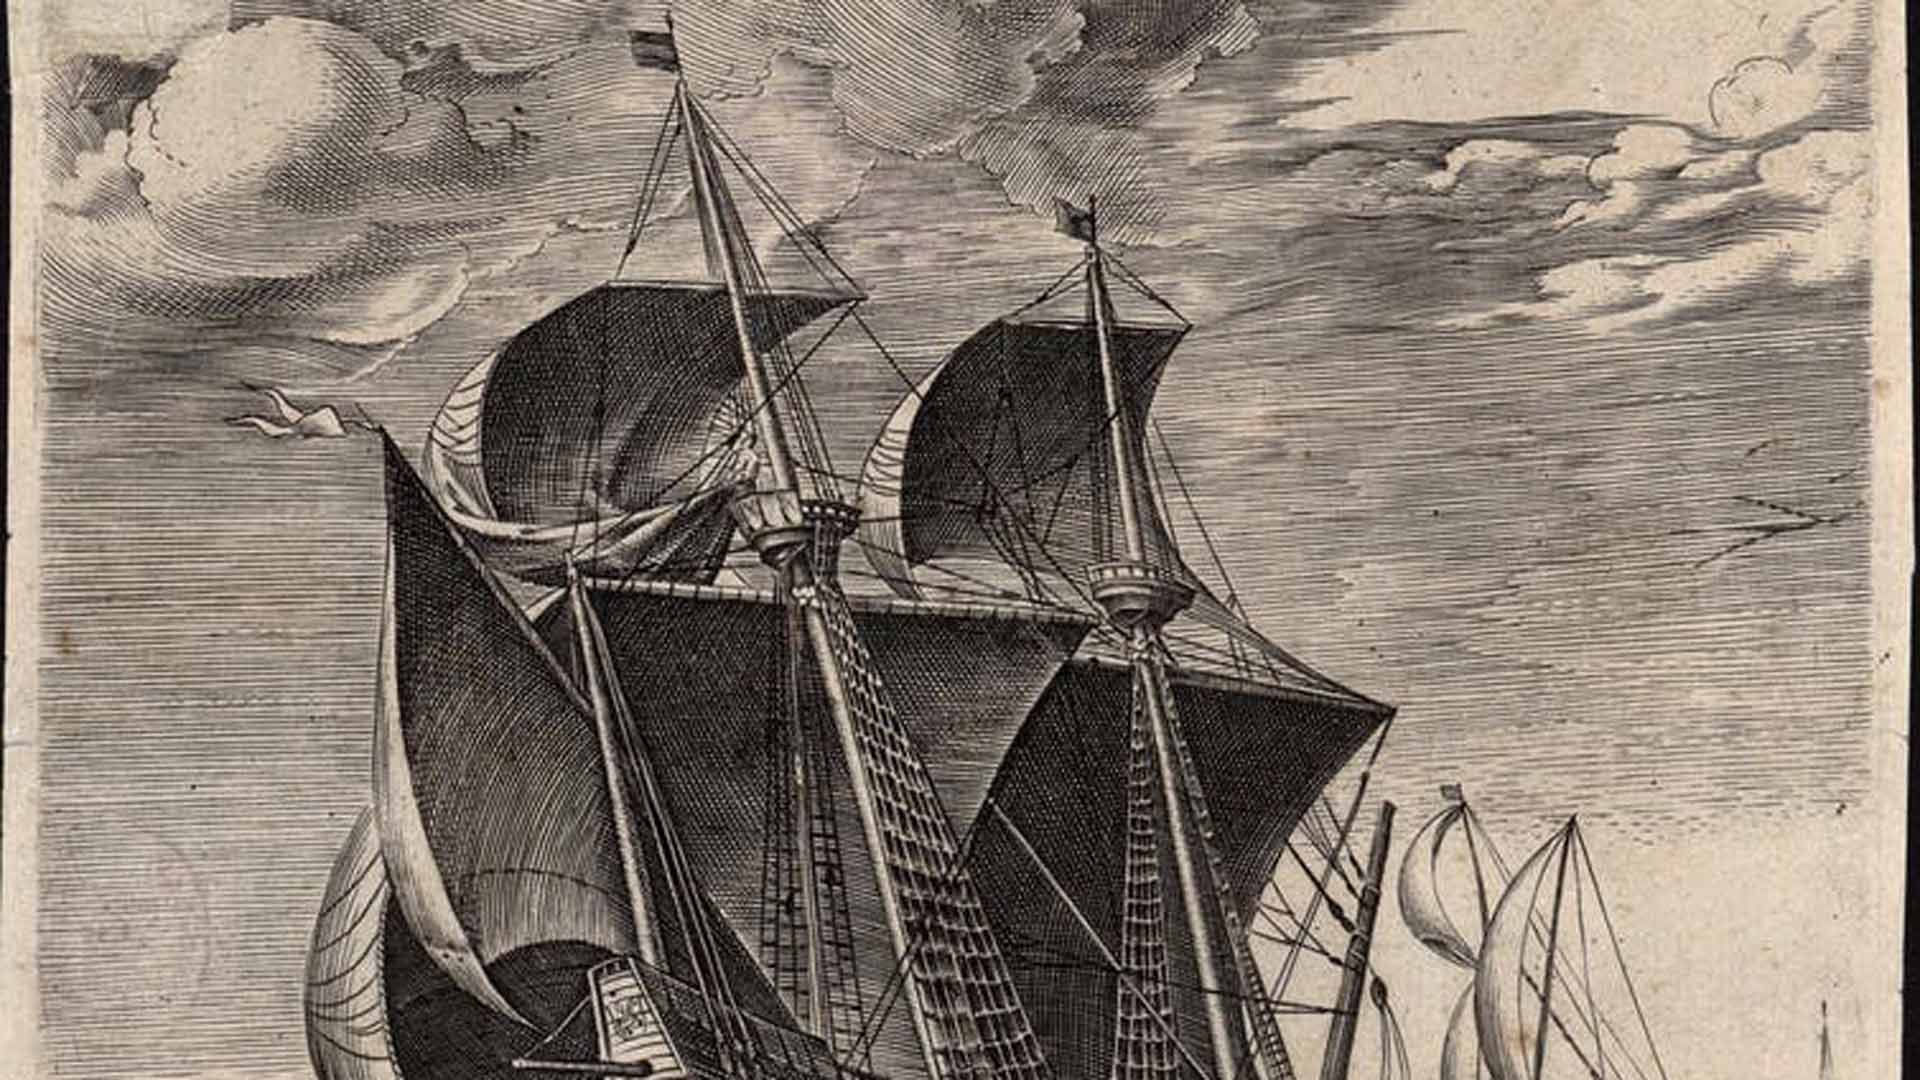 Así vivían (y fallecían) los tripulantes a bordo de las naves de Magallanes-Elcano